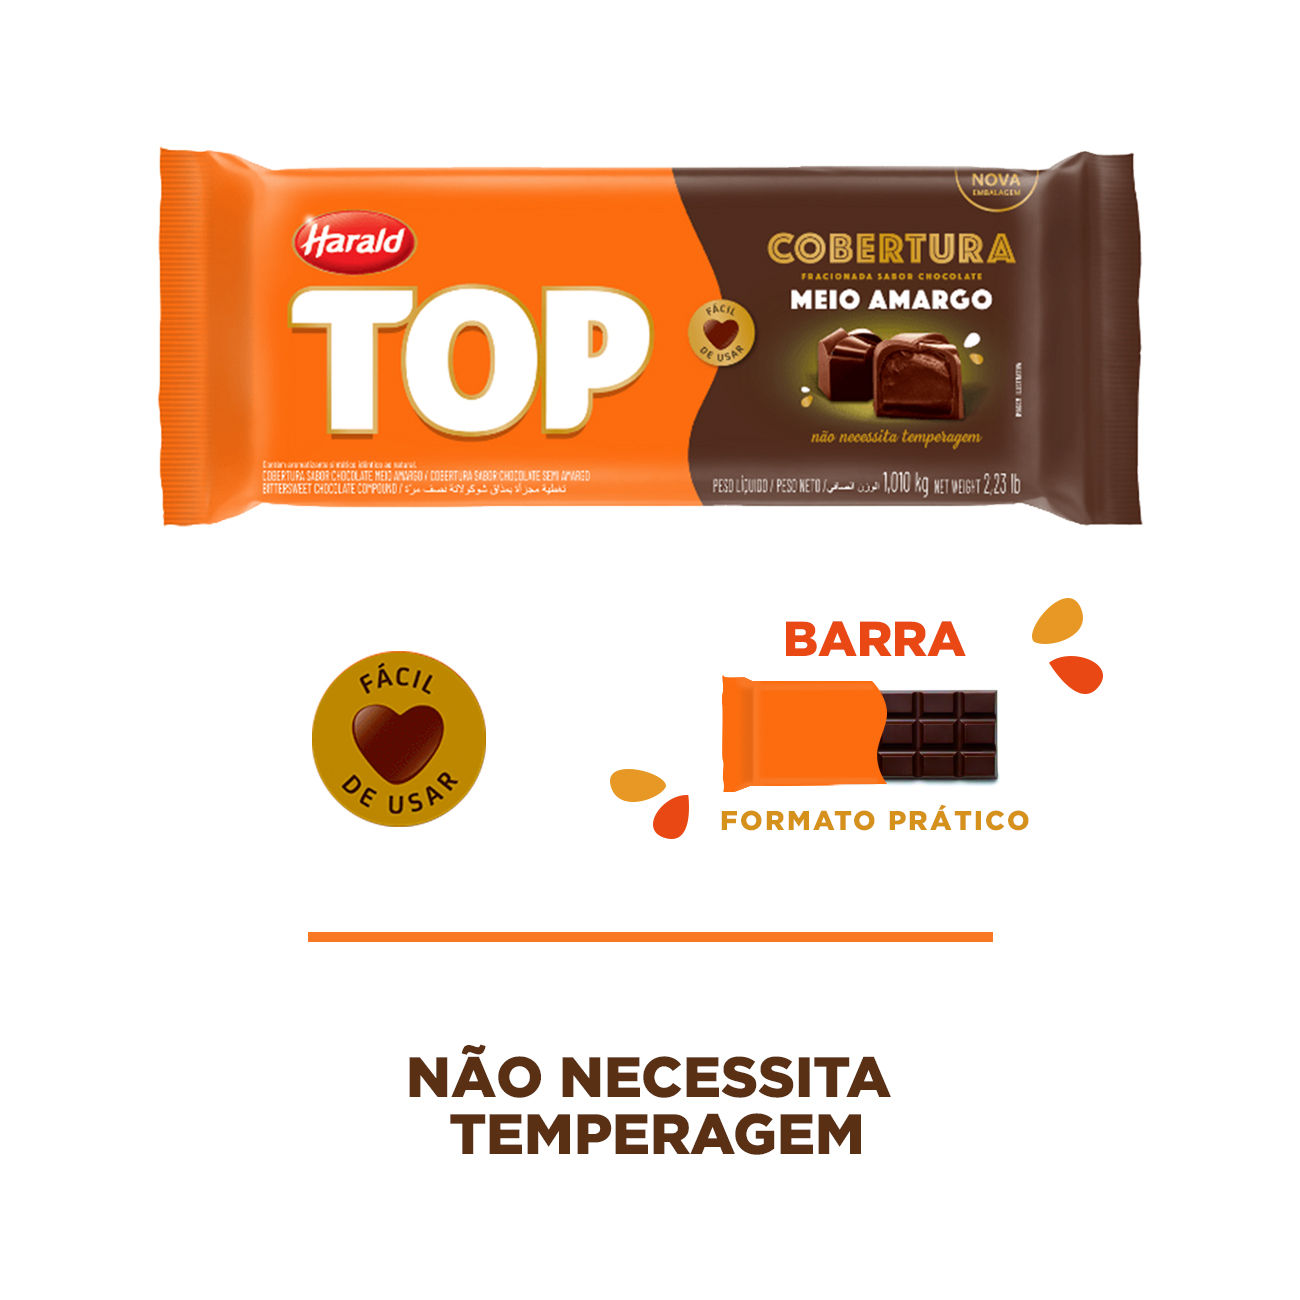 Cobertura de Chocolate em Barra Harald Top Meio Amargo 1,05kg